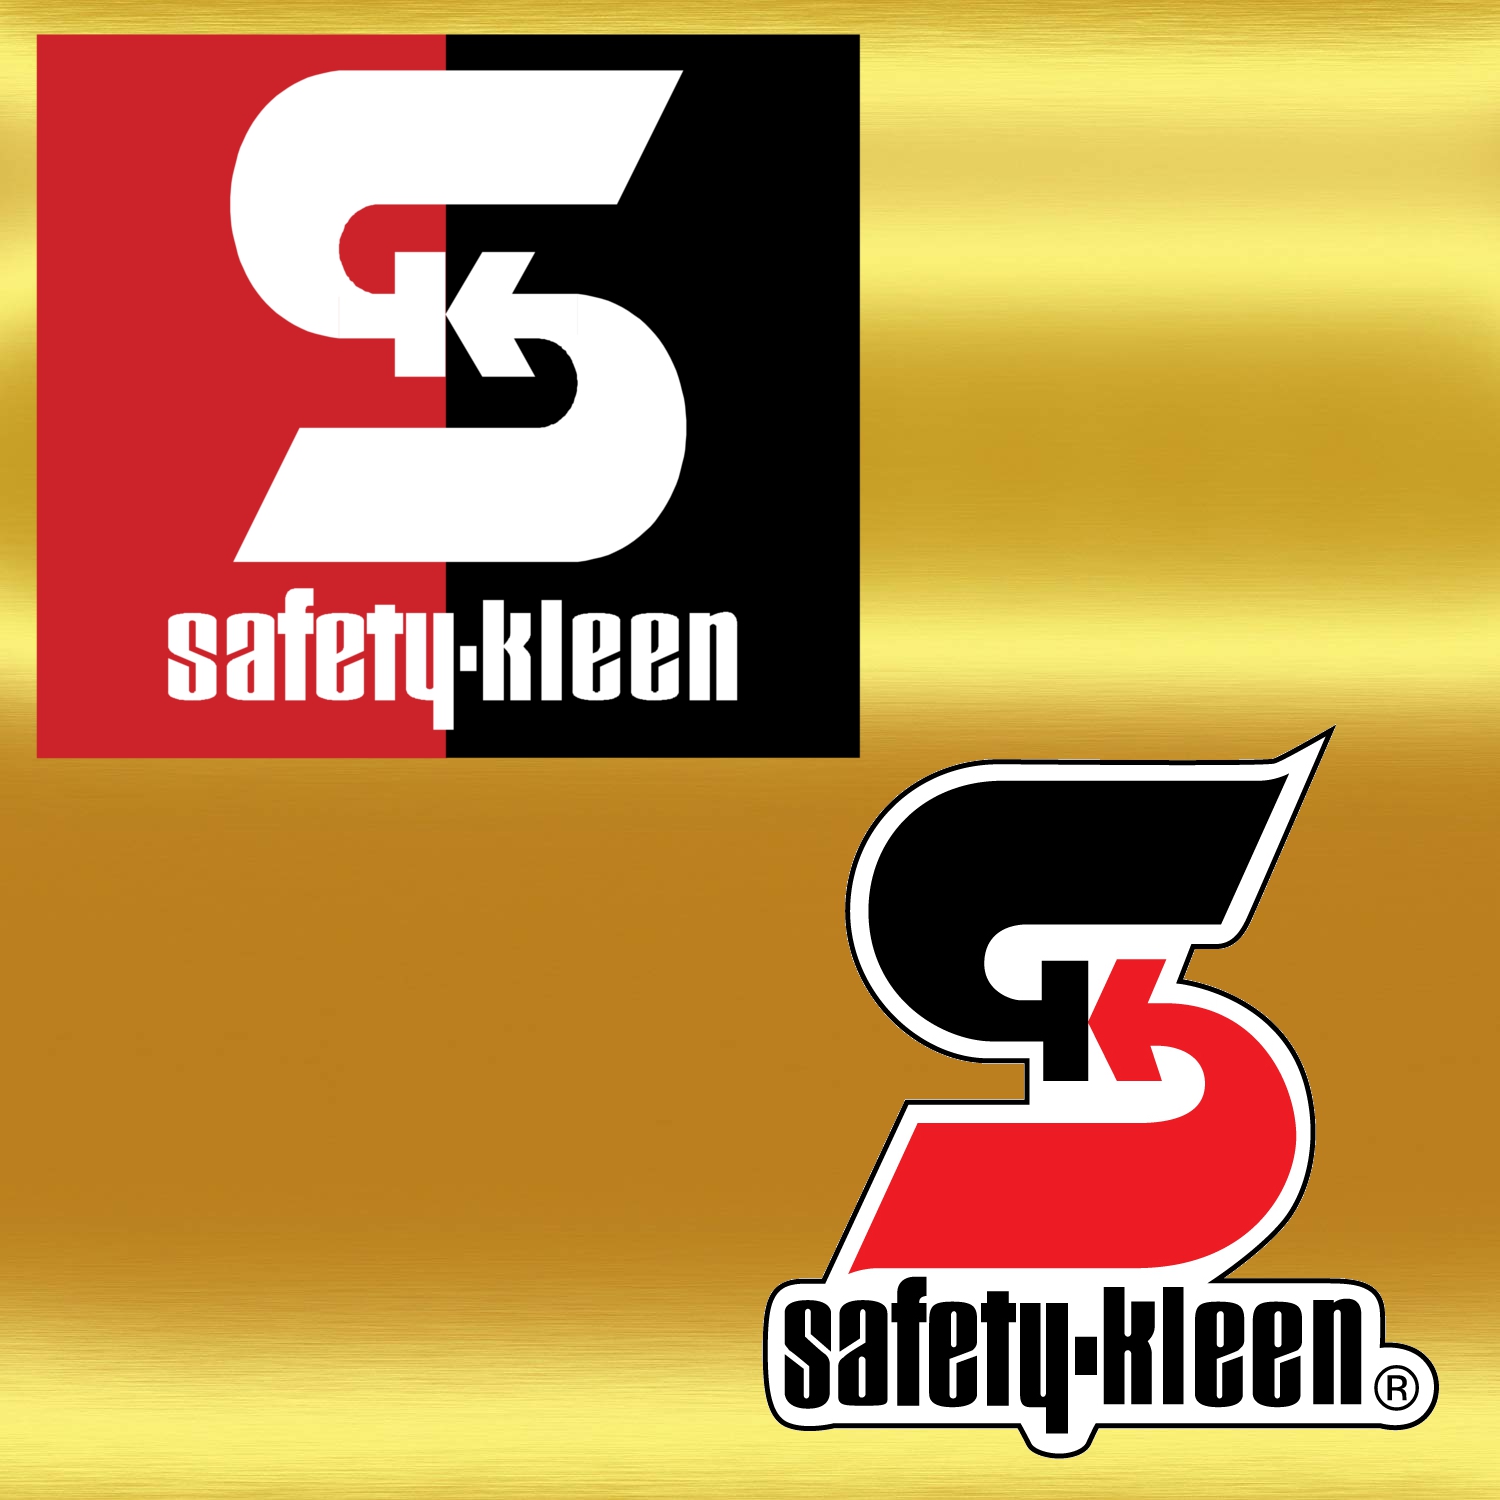 safety kleen logos.jpg